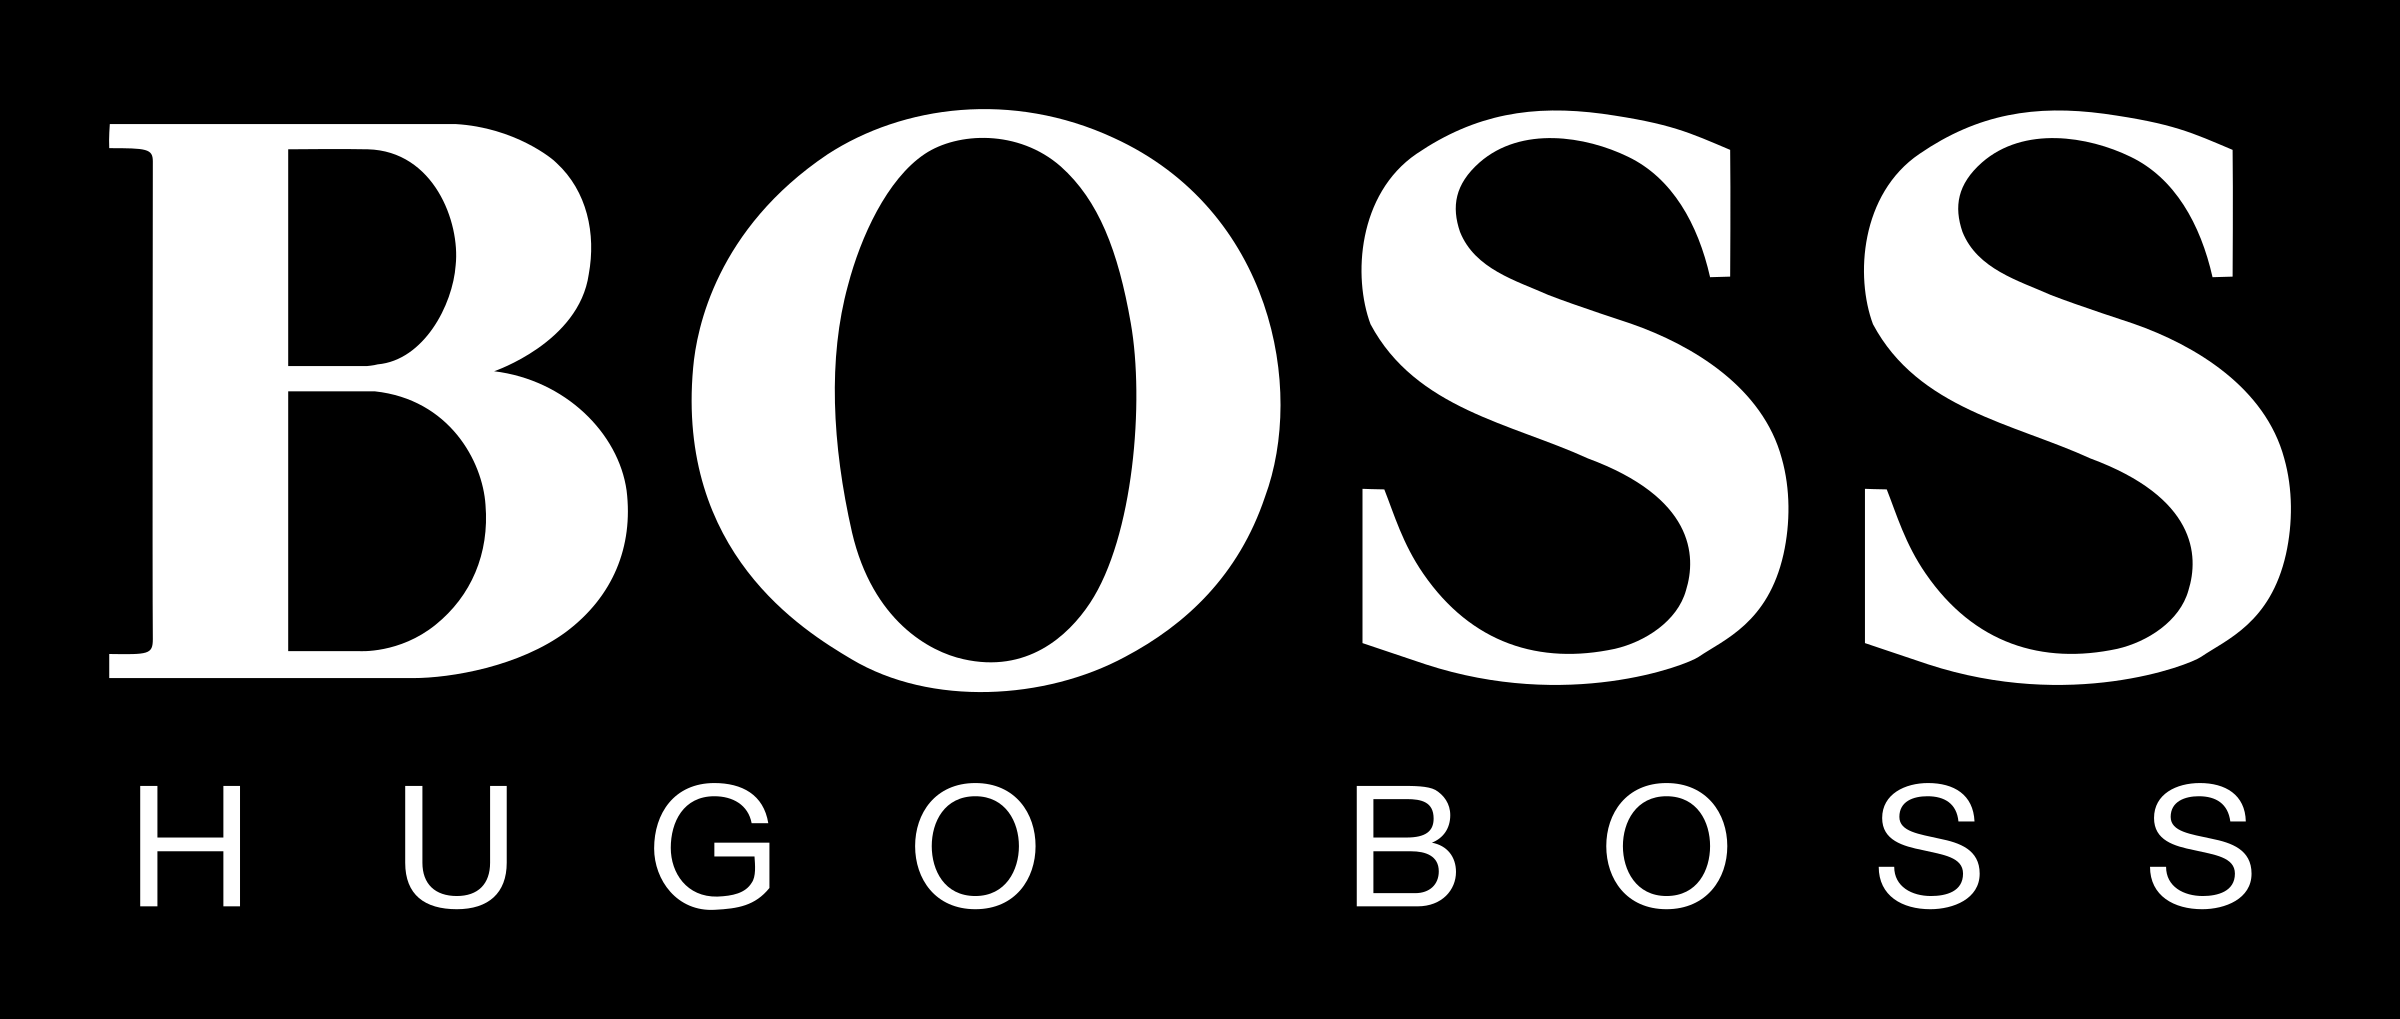 BOSS HOSS Logo Black And Whit